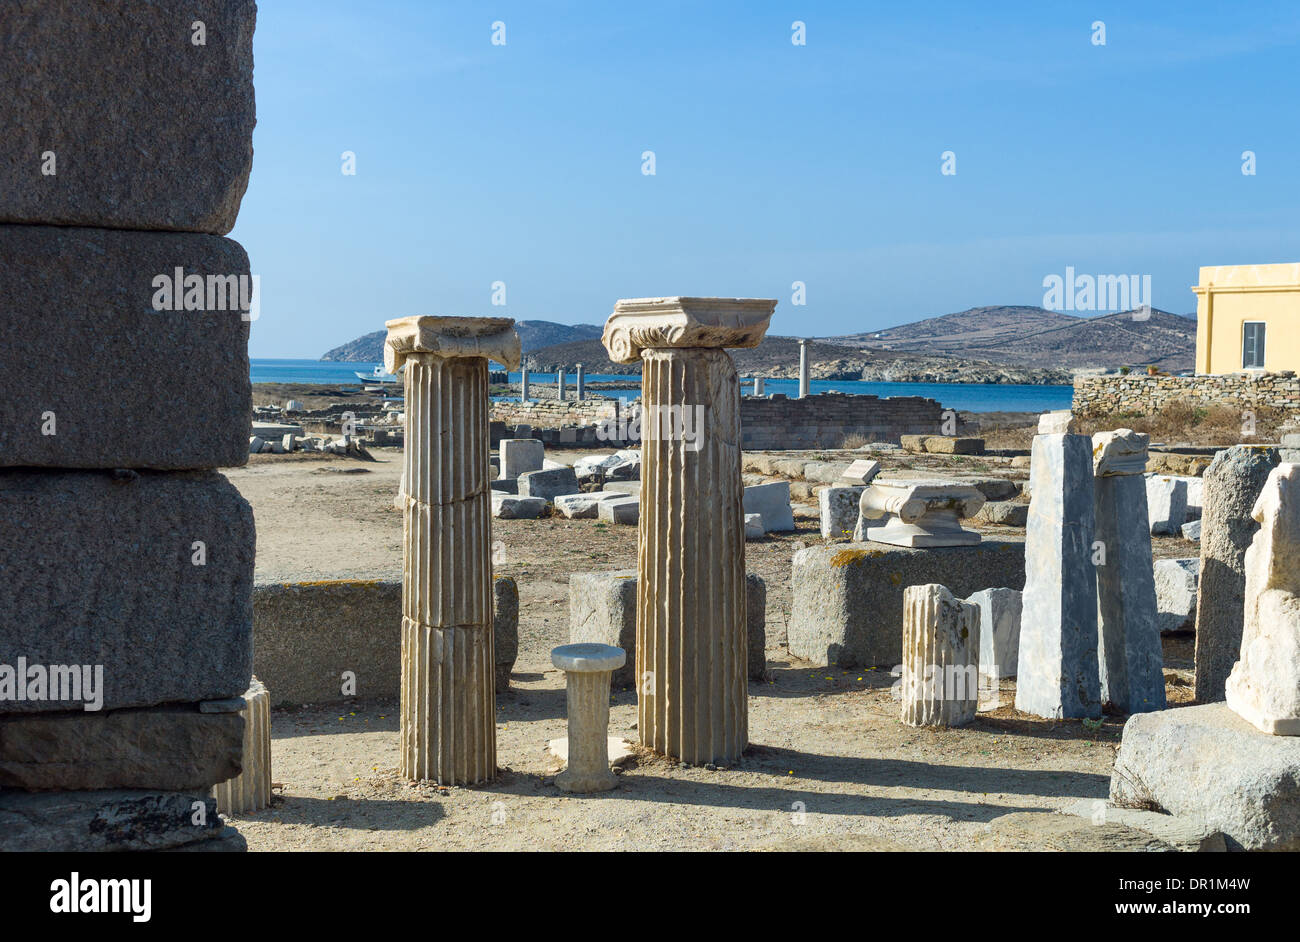 Grecia, Delos, columnas dóricas en el sitio arqueológico Foto de stock